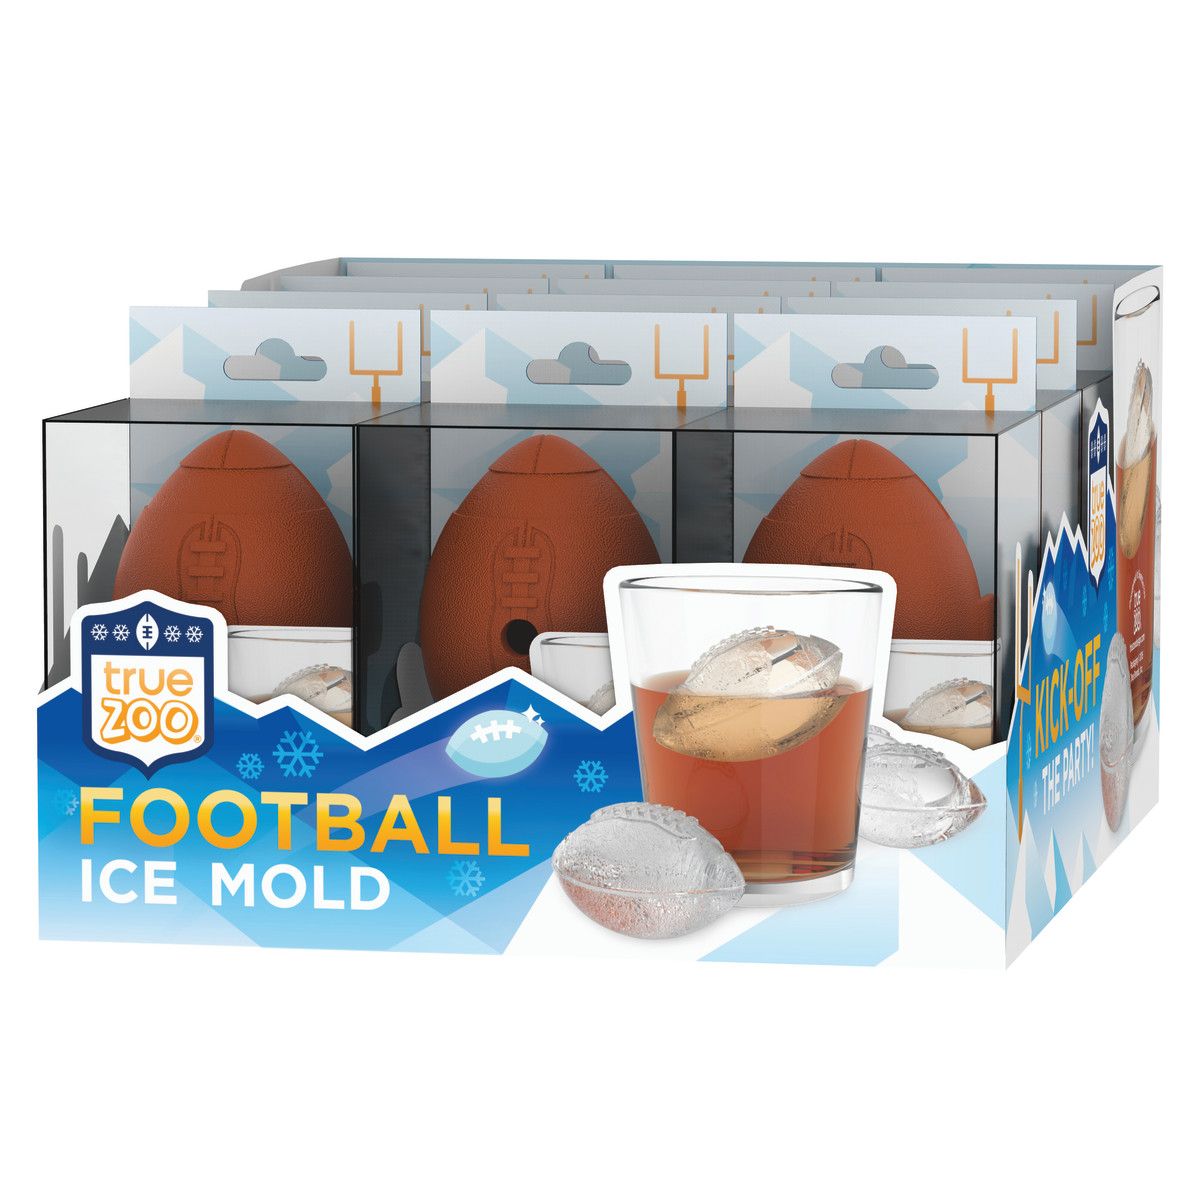 True Zoo Football Ice Mold, Dishwasher Safe Novelty Silicone 2